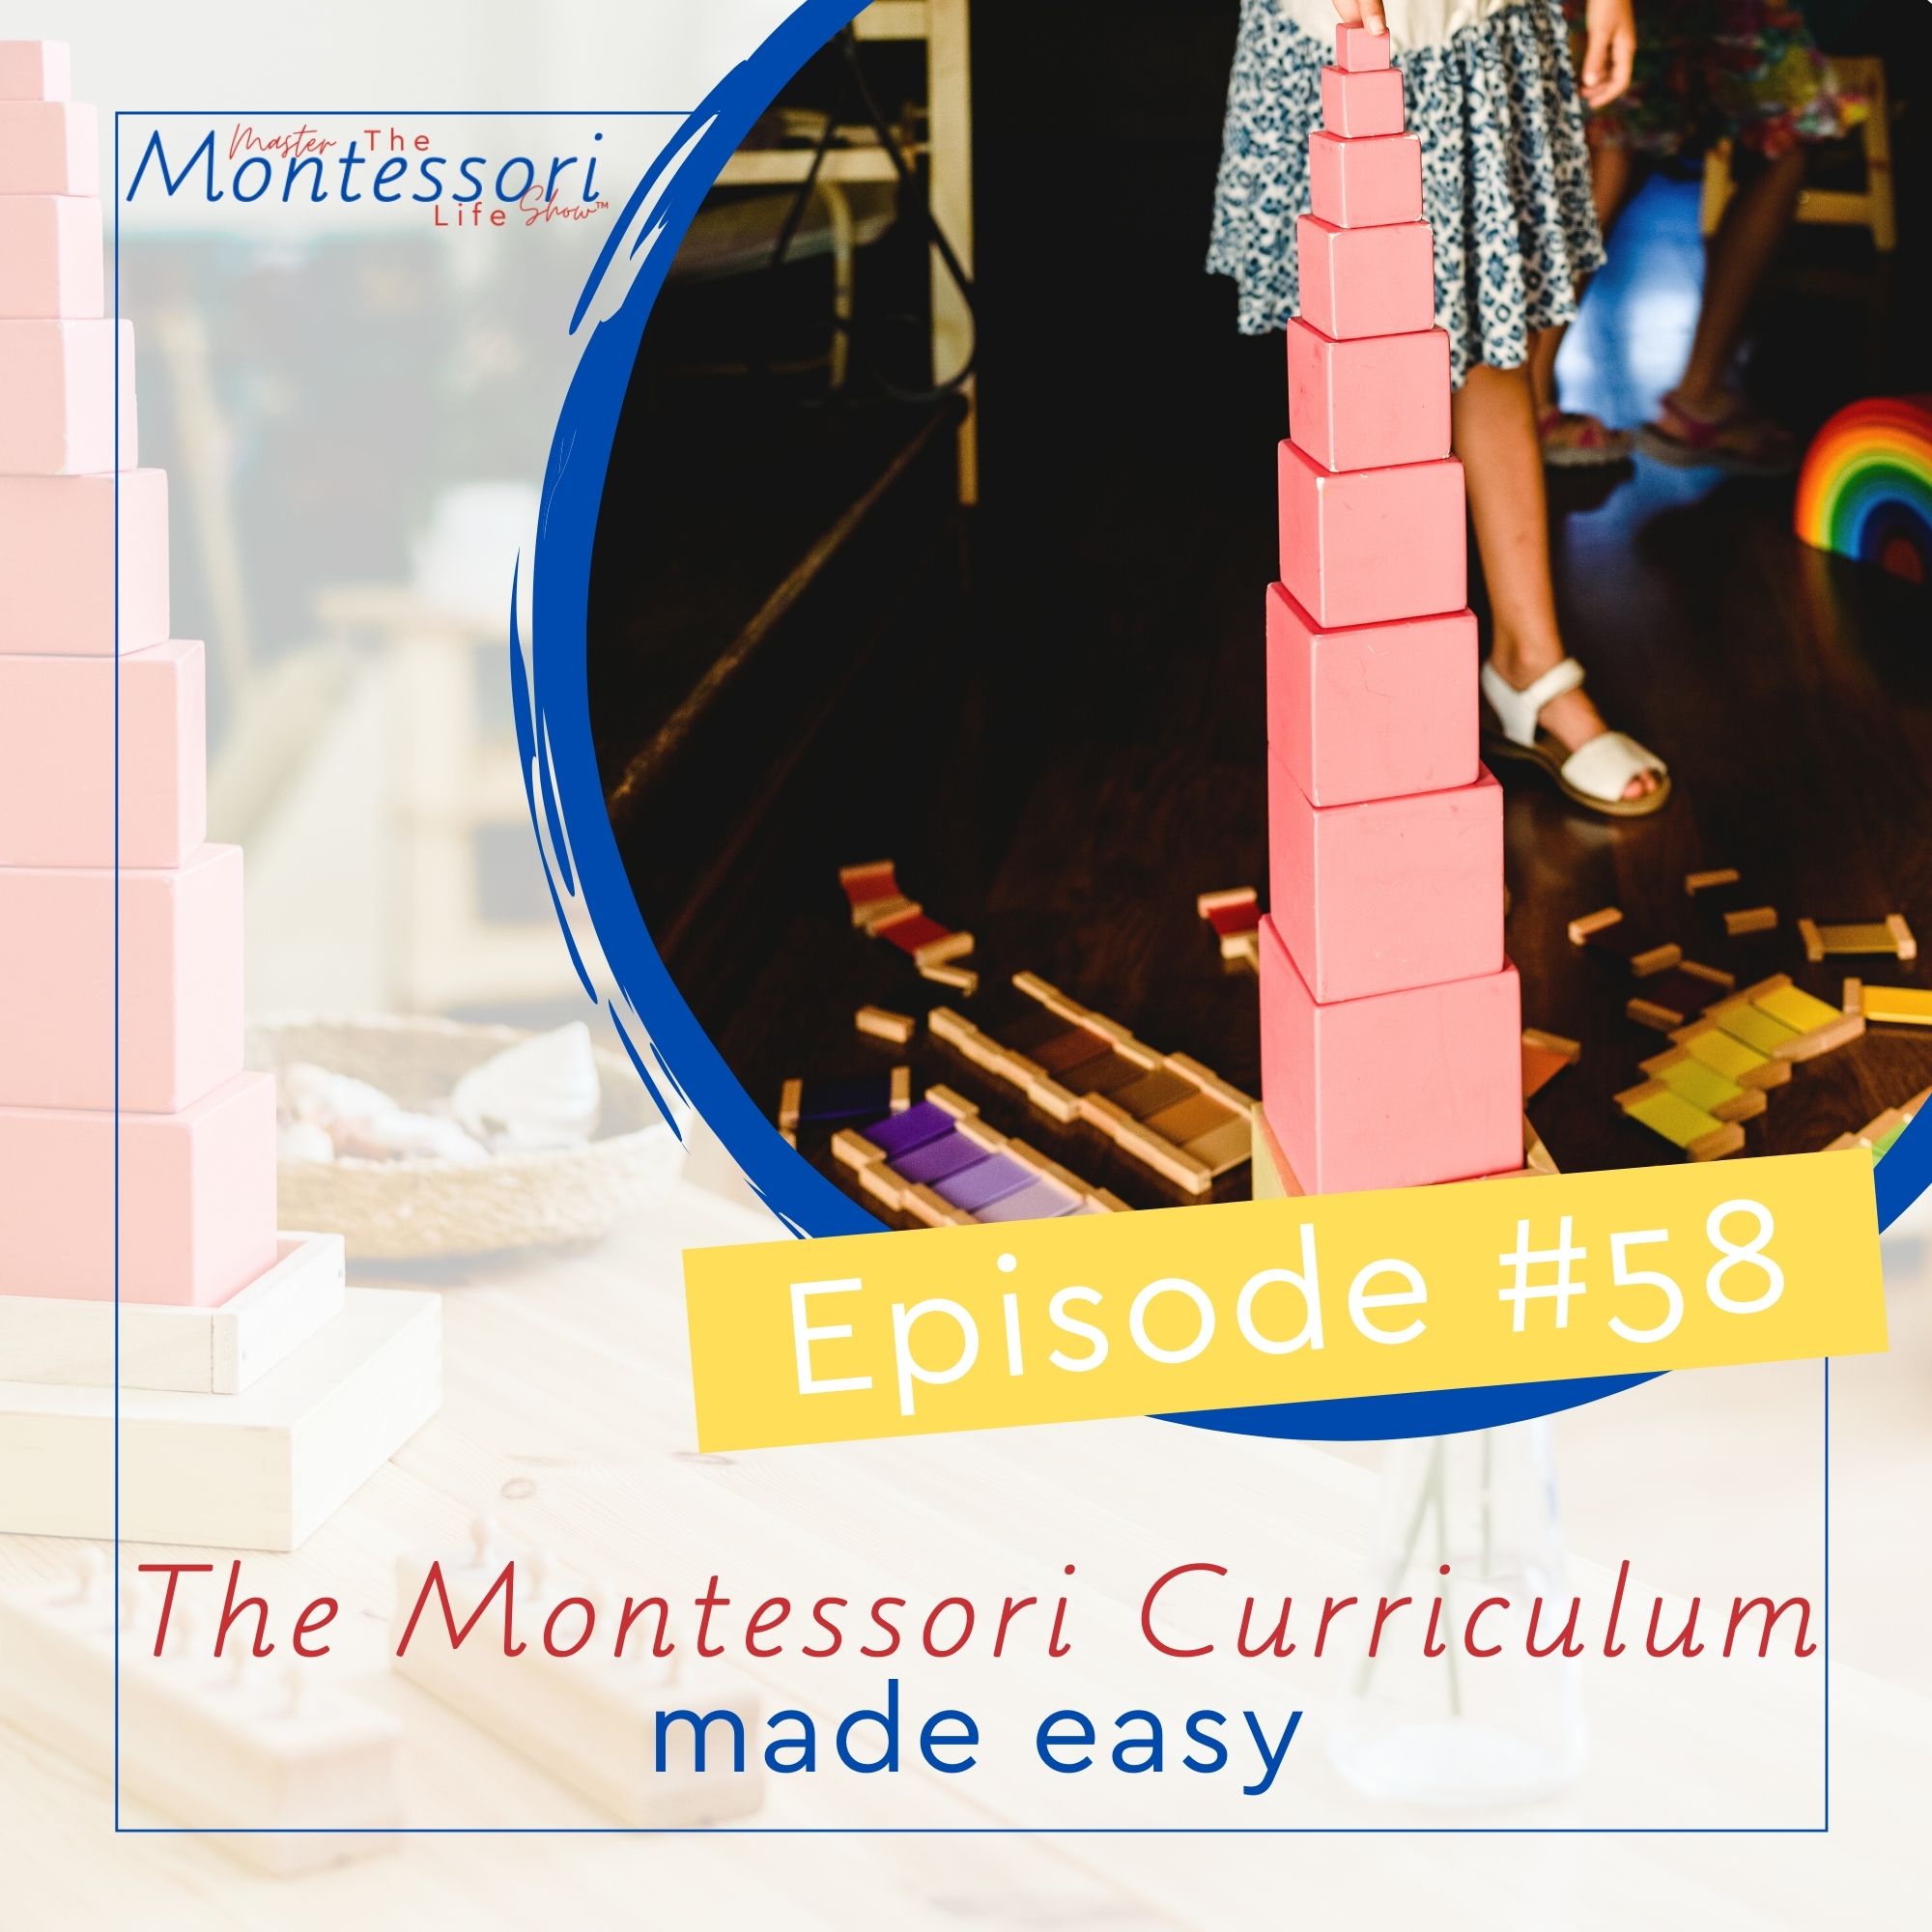 Episode 58: The Montessori Curriculum made easy